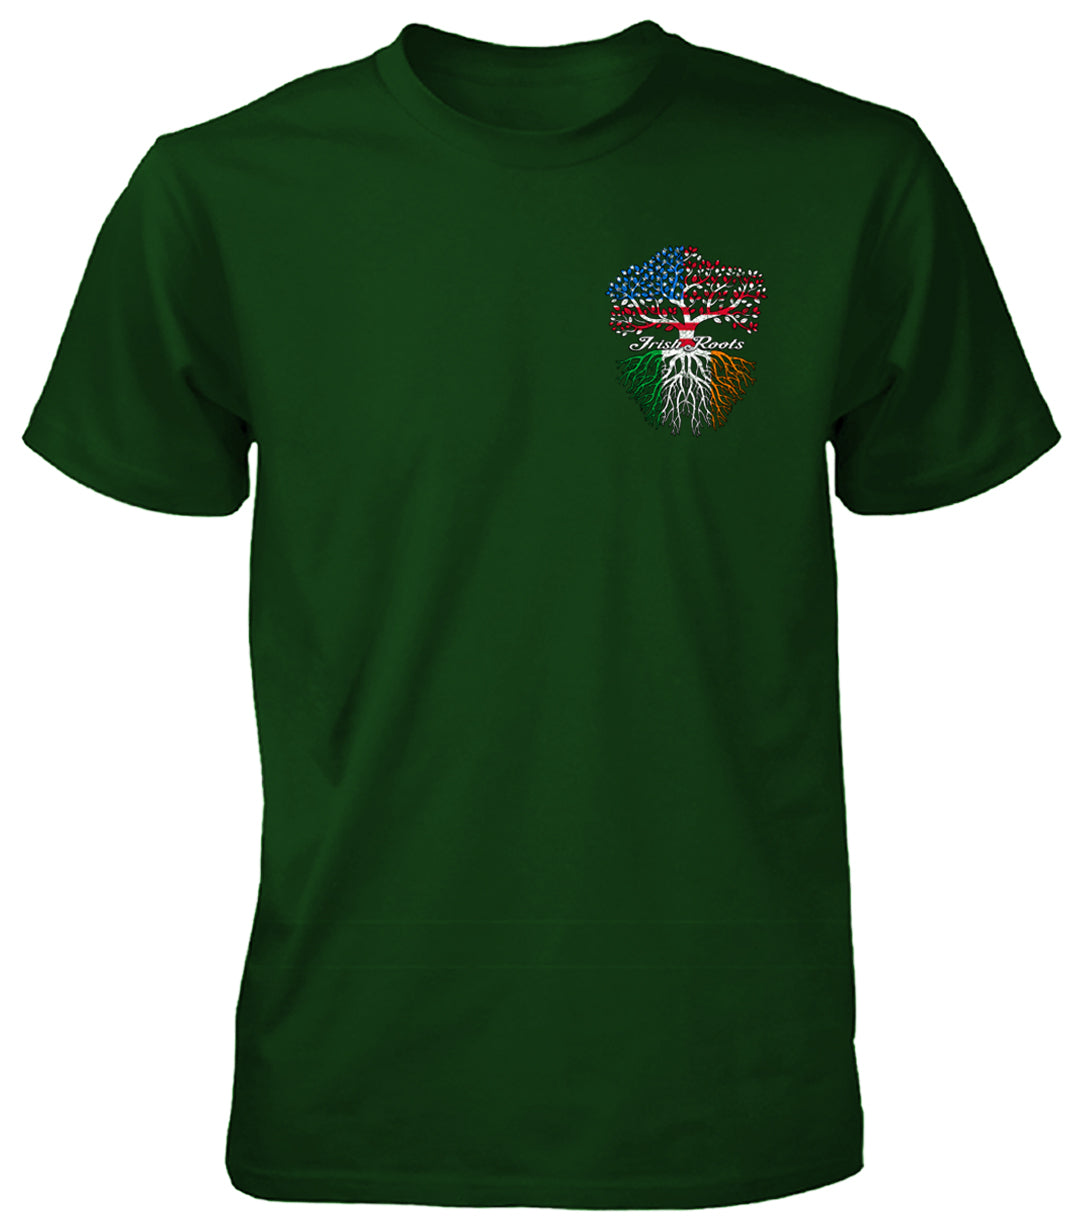 Irish Roots T-Shirt